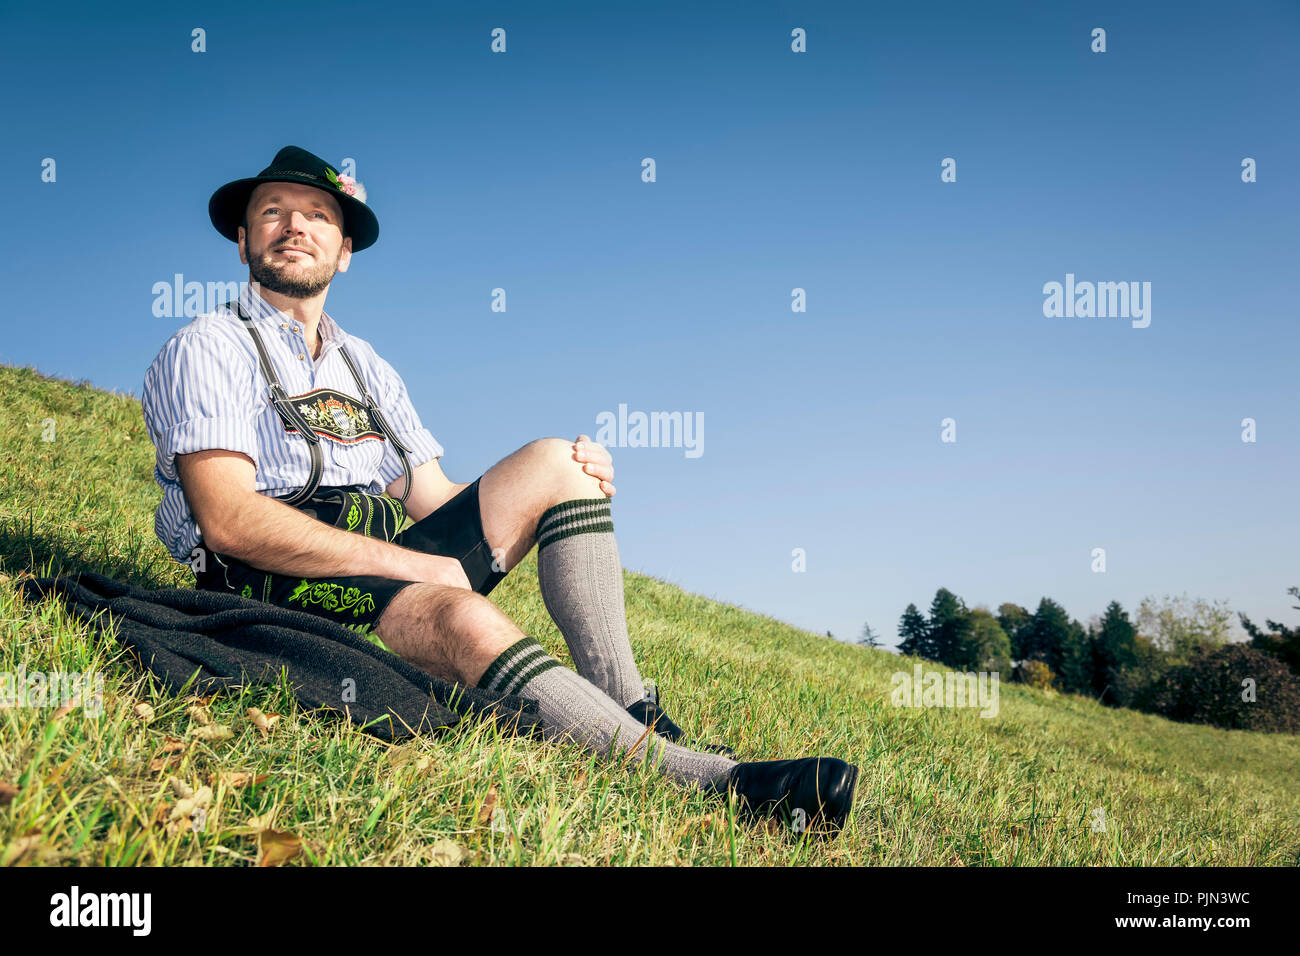 A young man in Bavarian national costume, Ein junger Mann in bayerischer Tracht Stock Photo